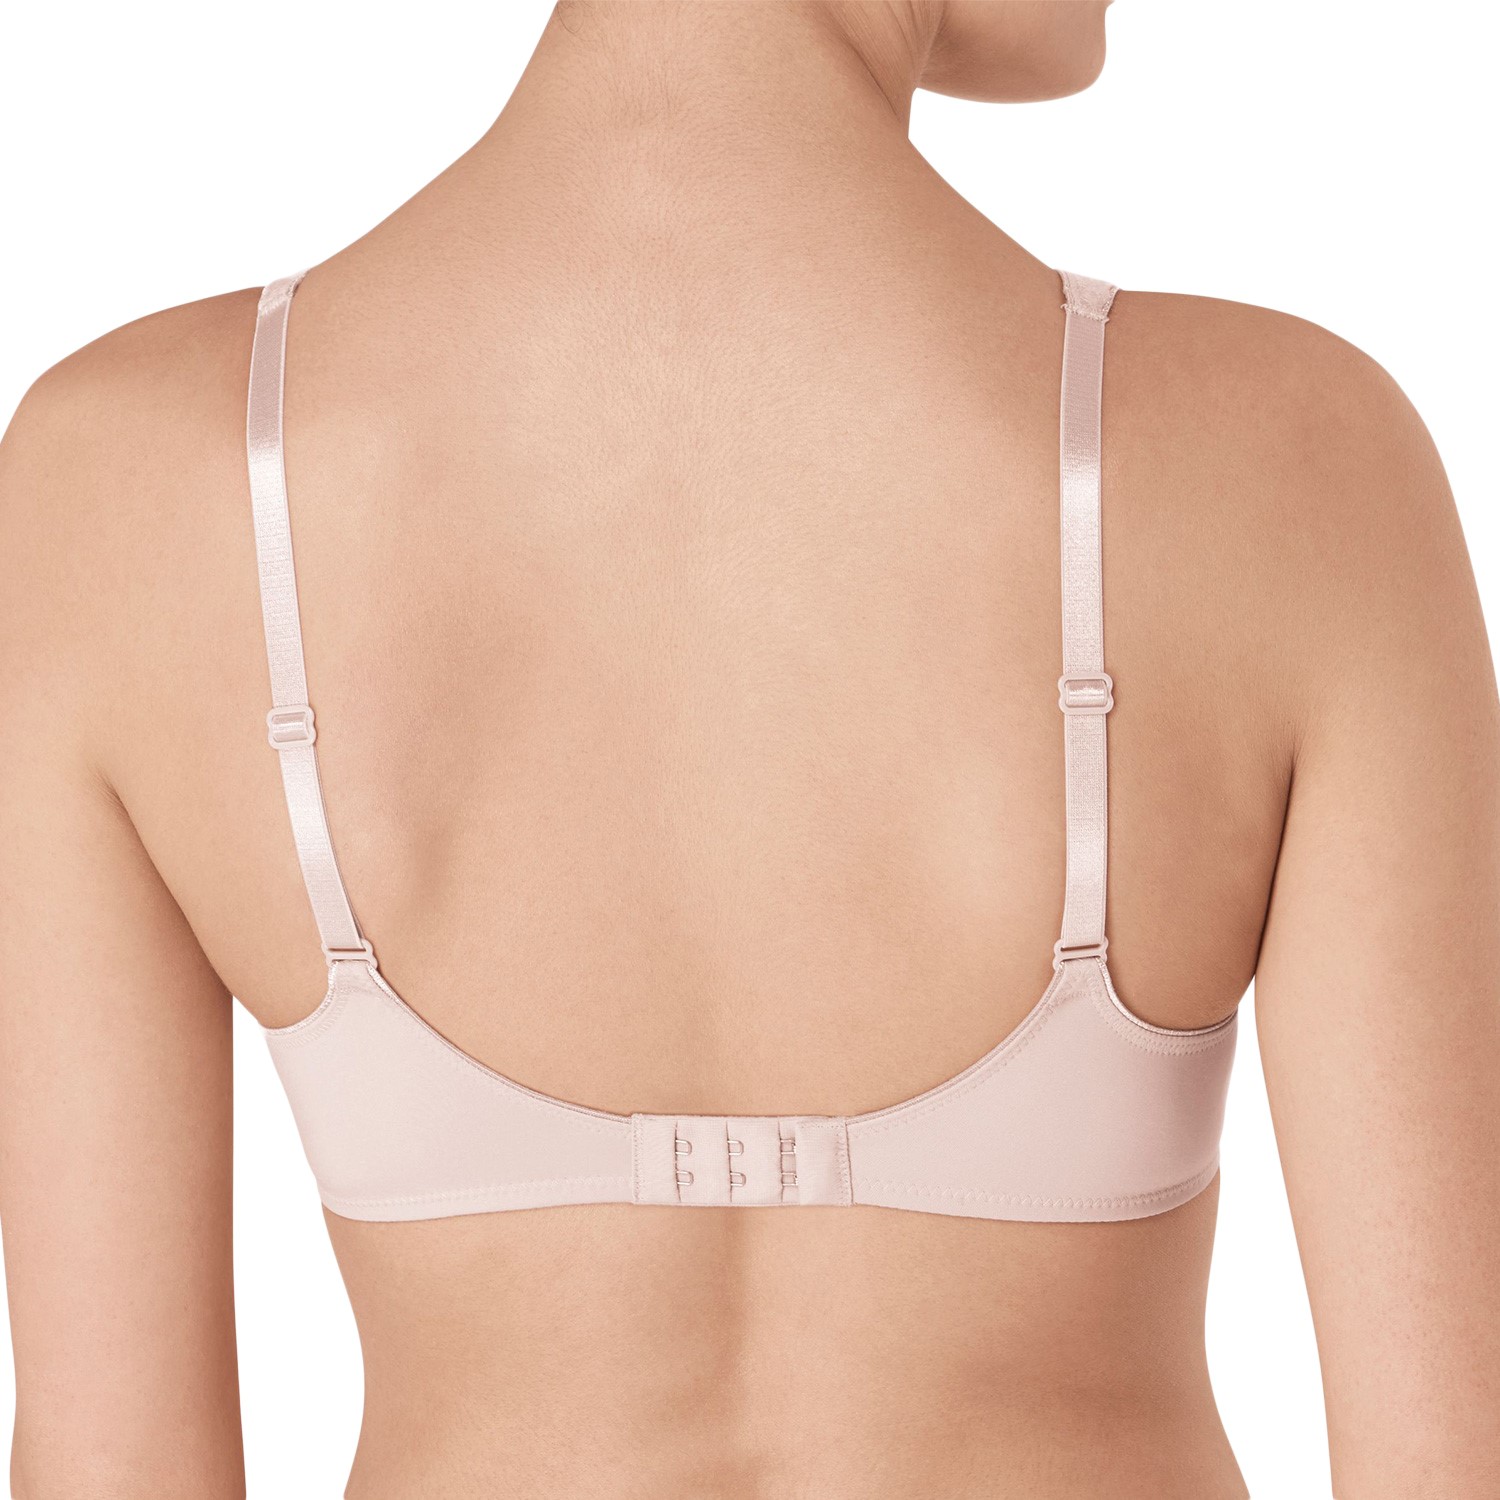 Triumph Ladyform Soft W BH - Wired bra - Bras - Underwear - Timarco.co.uk